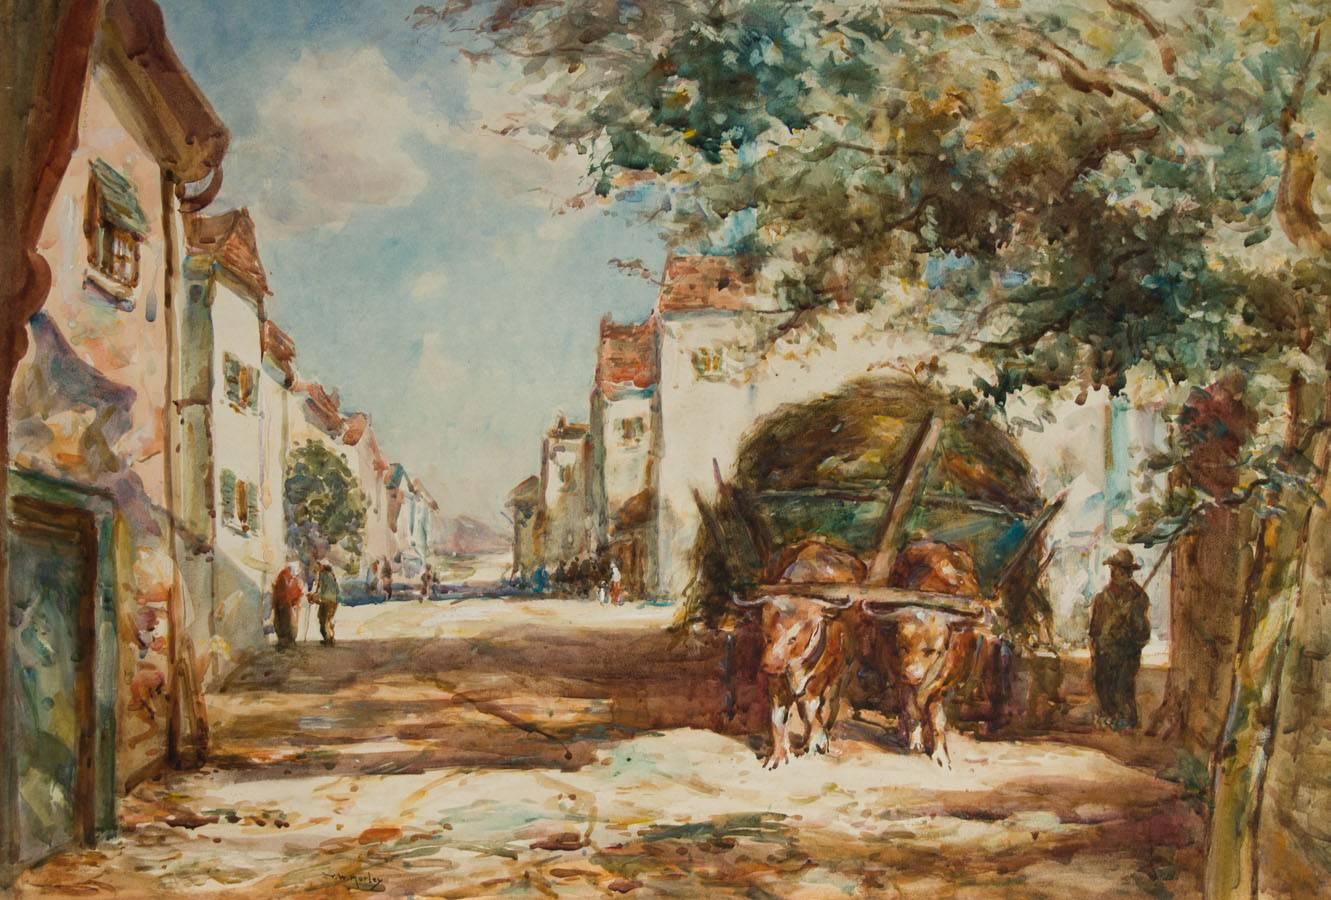 Une peinture à l'aquarelle anglaise du début du 20e siècle avec des couleurs corporelles, par le talentueux aquarelliste anglais Thomas William Morley. Peint sur du carton d'artiste. Signé en bas à droite. 